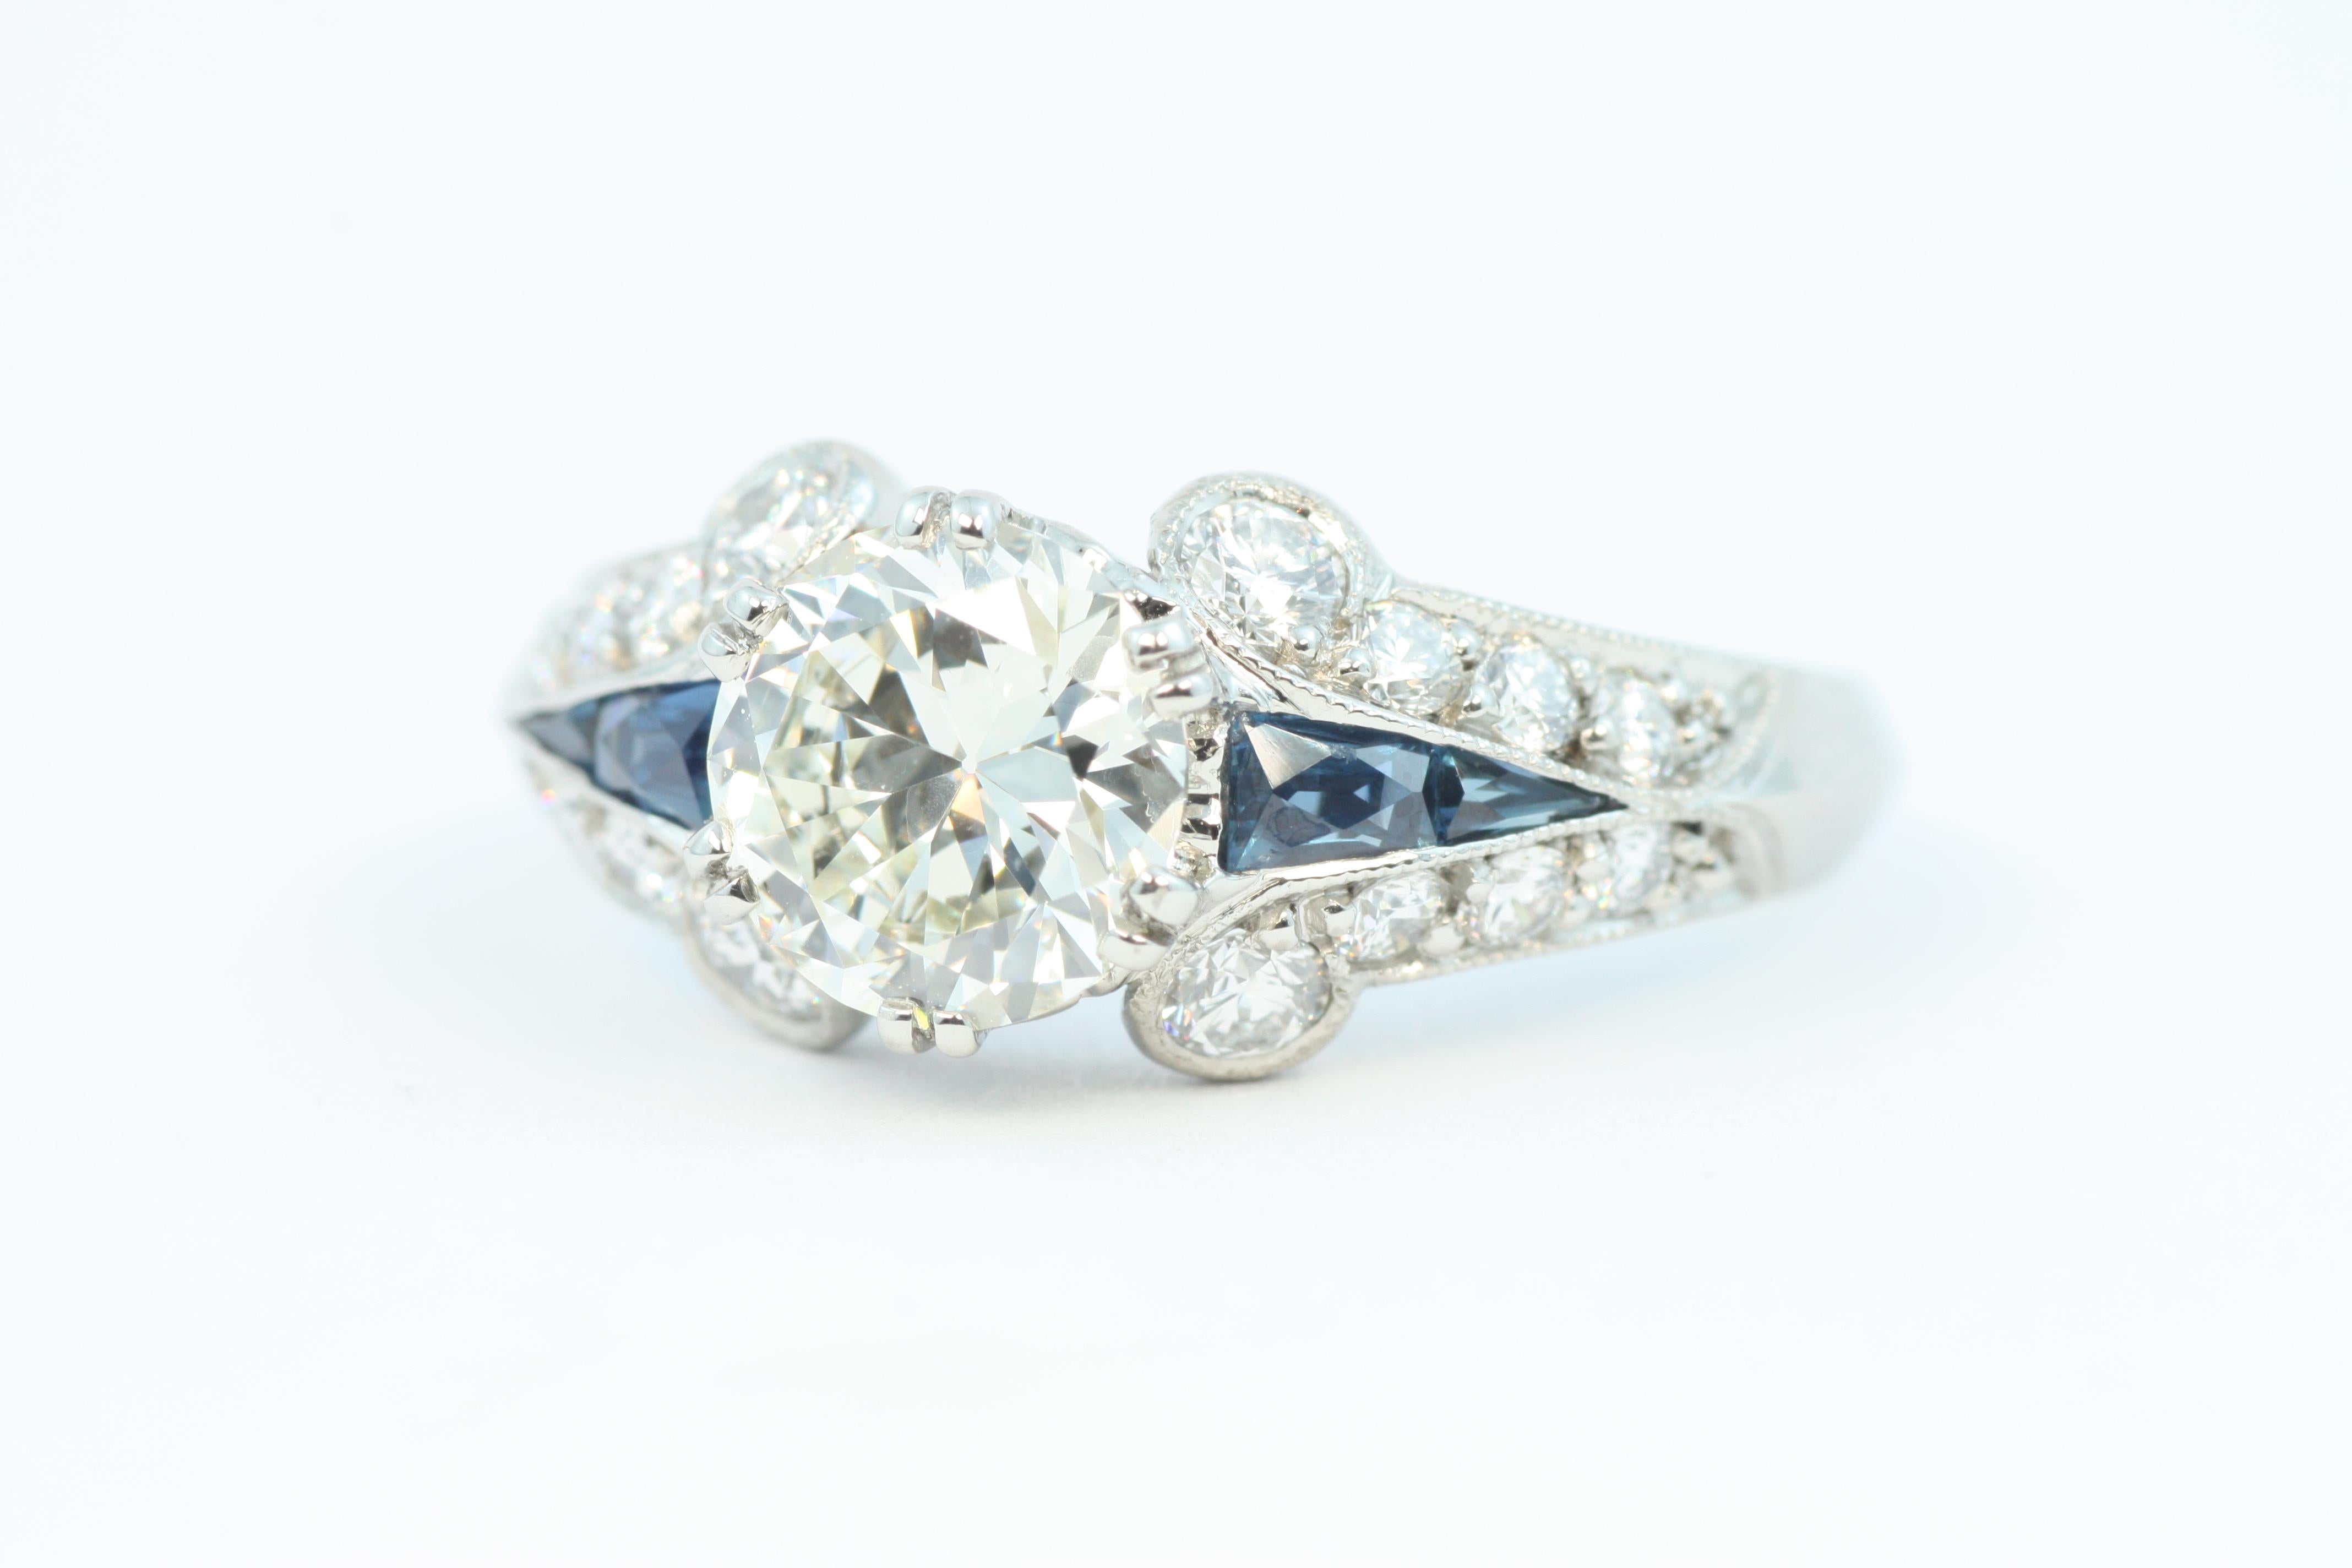 Brilliant Cut 1.7 Carat Total Diamond & Sapphire Art Deco Palladium/Platinum Engagement Ring For Sale